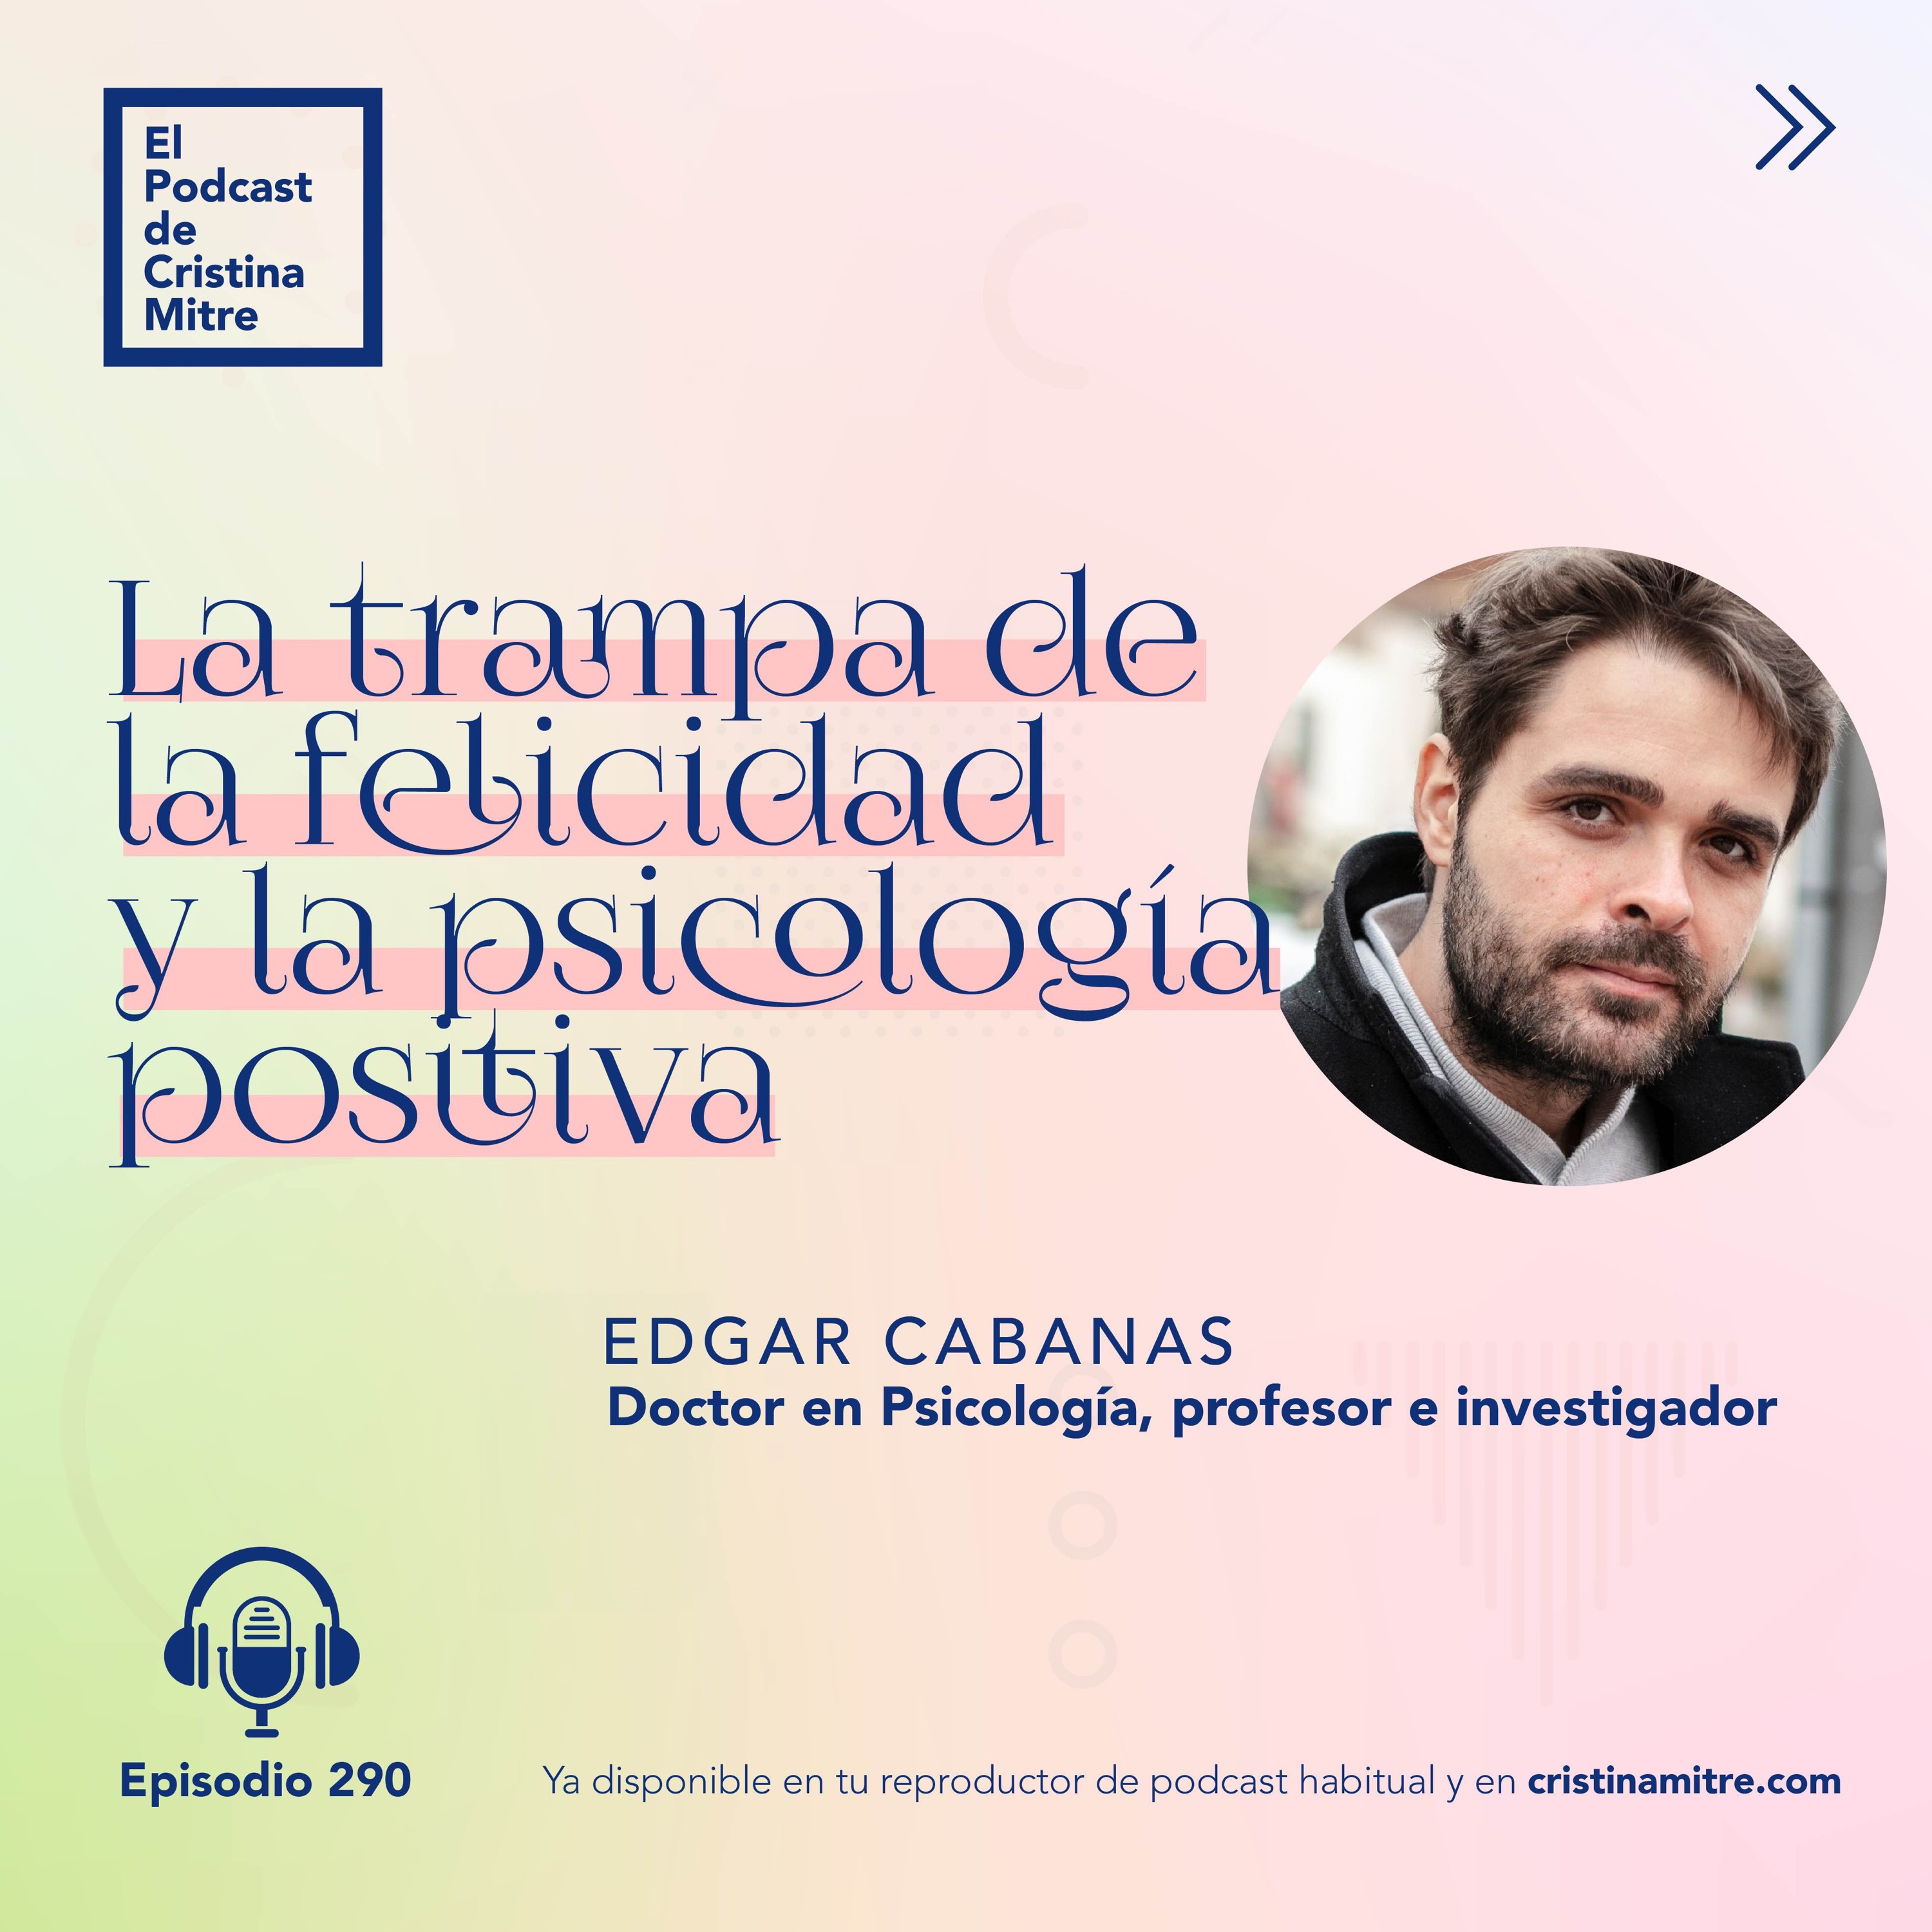 La trampa de la felicidad y la psicología positiva, con Edgar Cabanas. Episodio 290